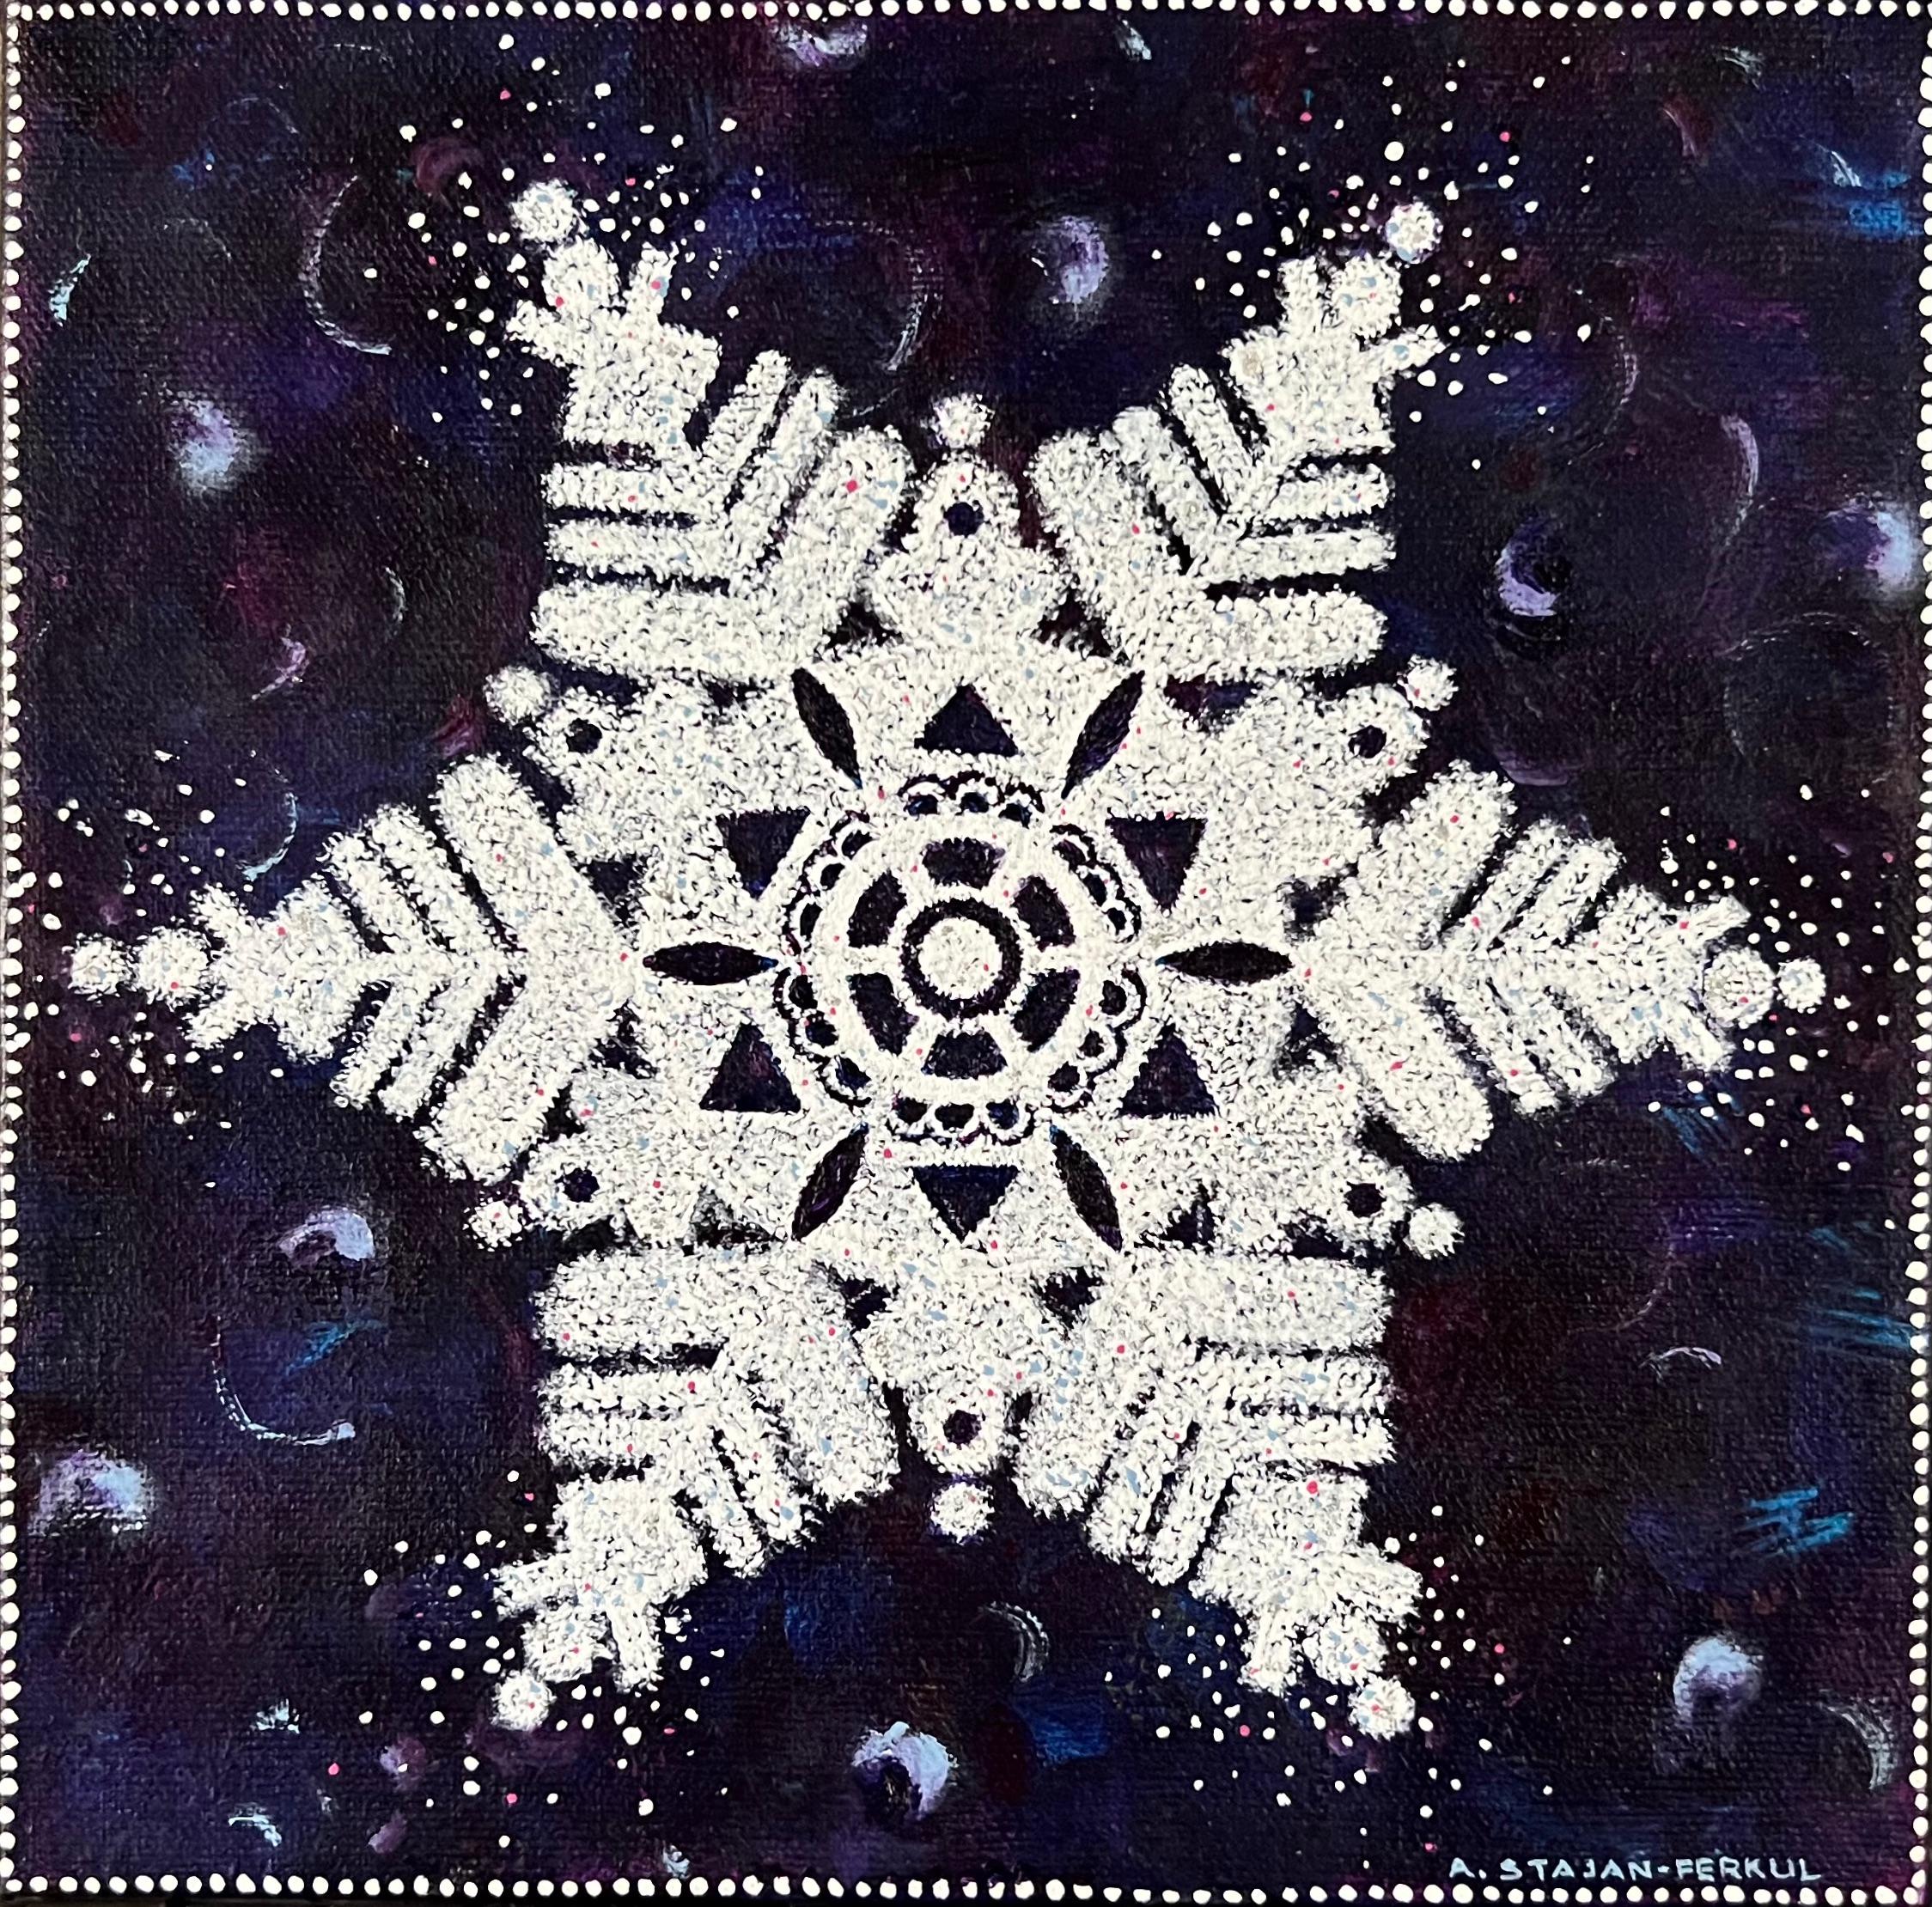 Flacon de neige dans le ciel, 8"x8", bleu, blanc, hiver, neige, étoile, peinture de Noël